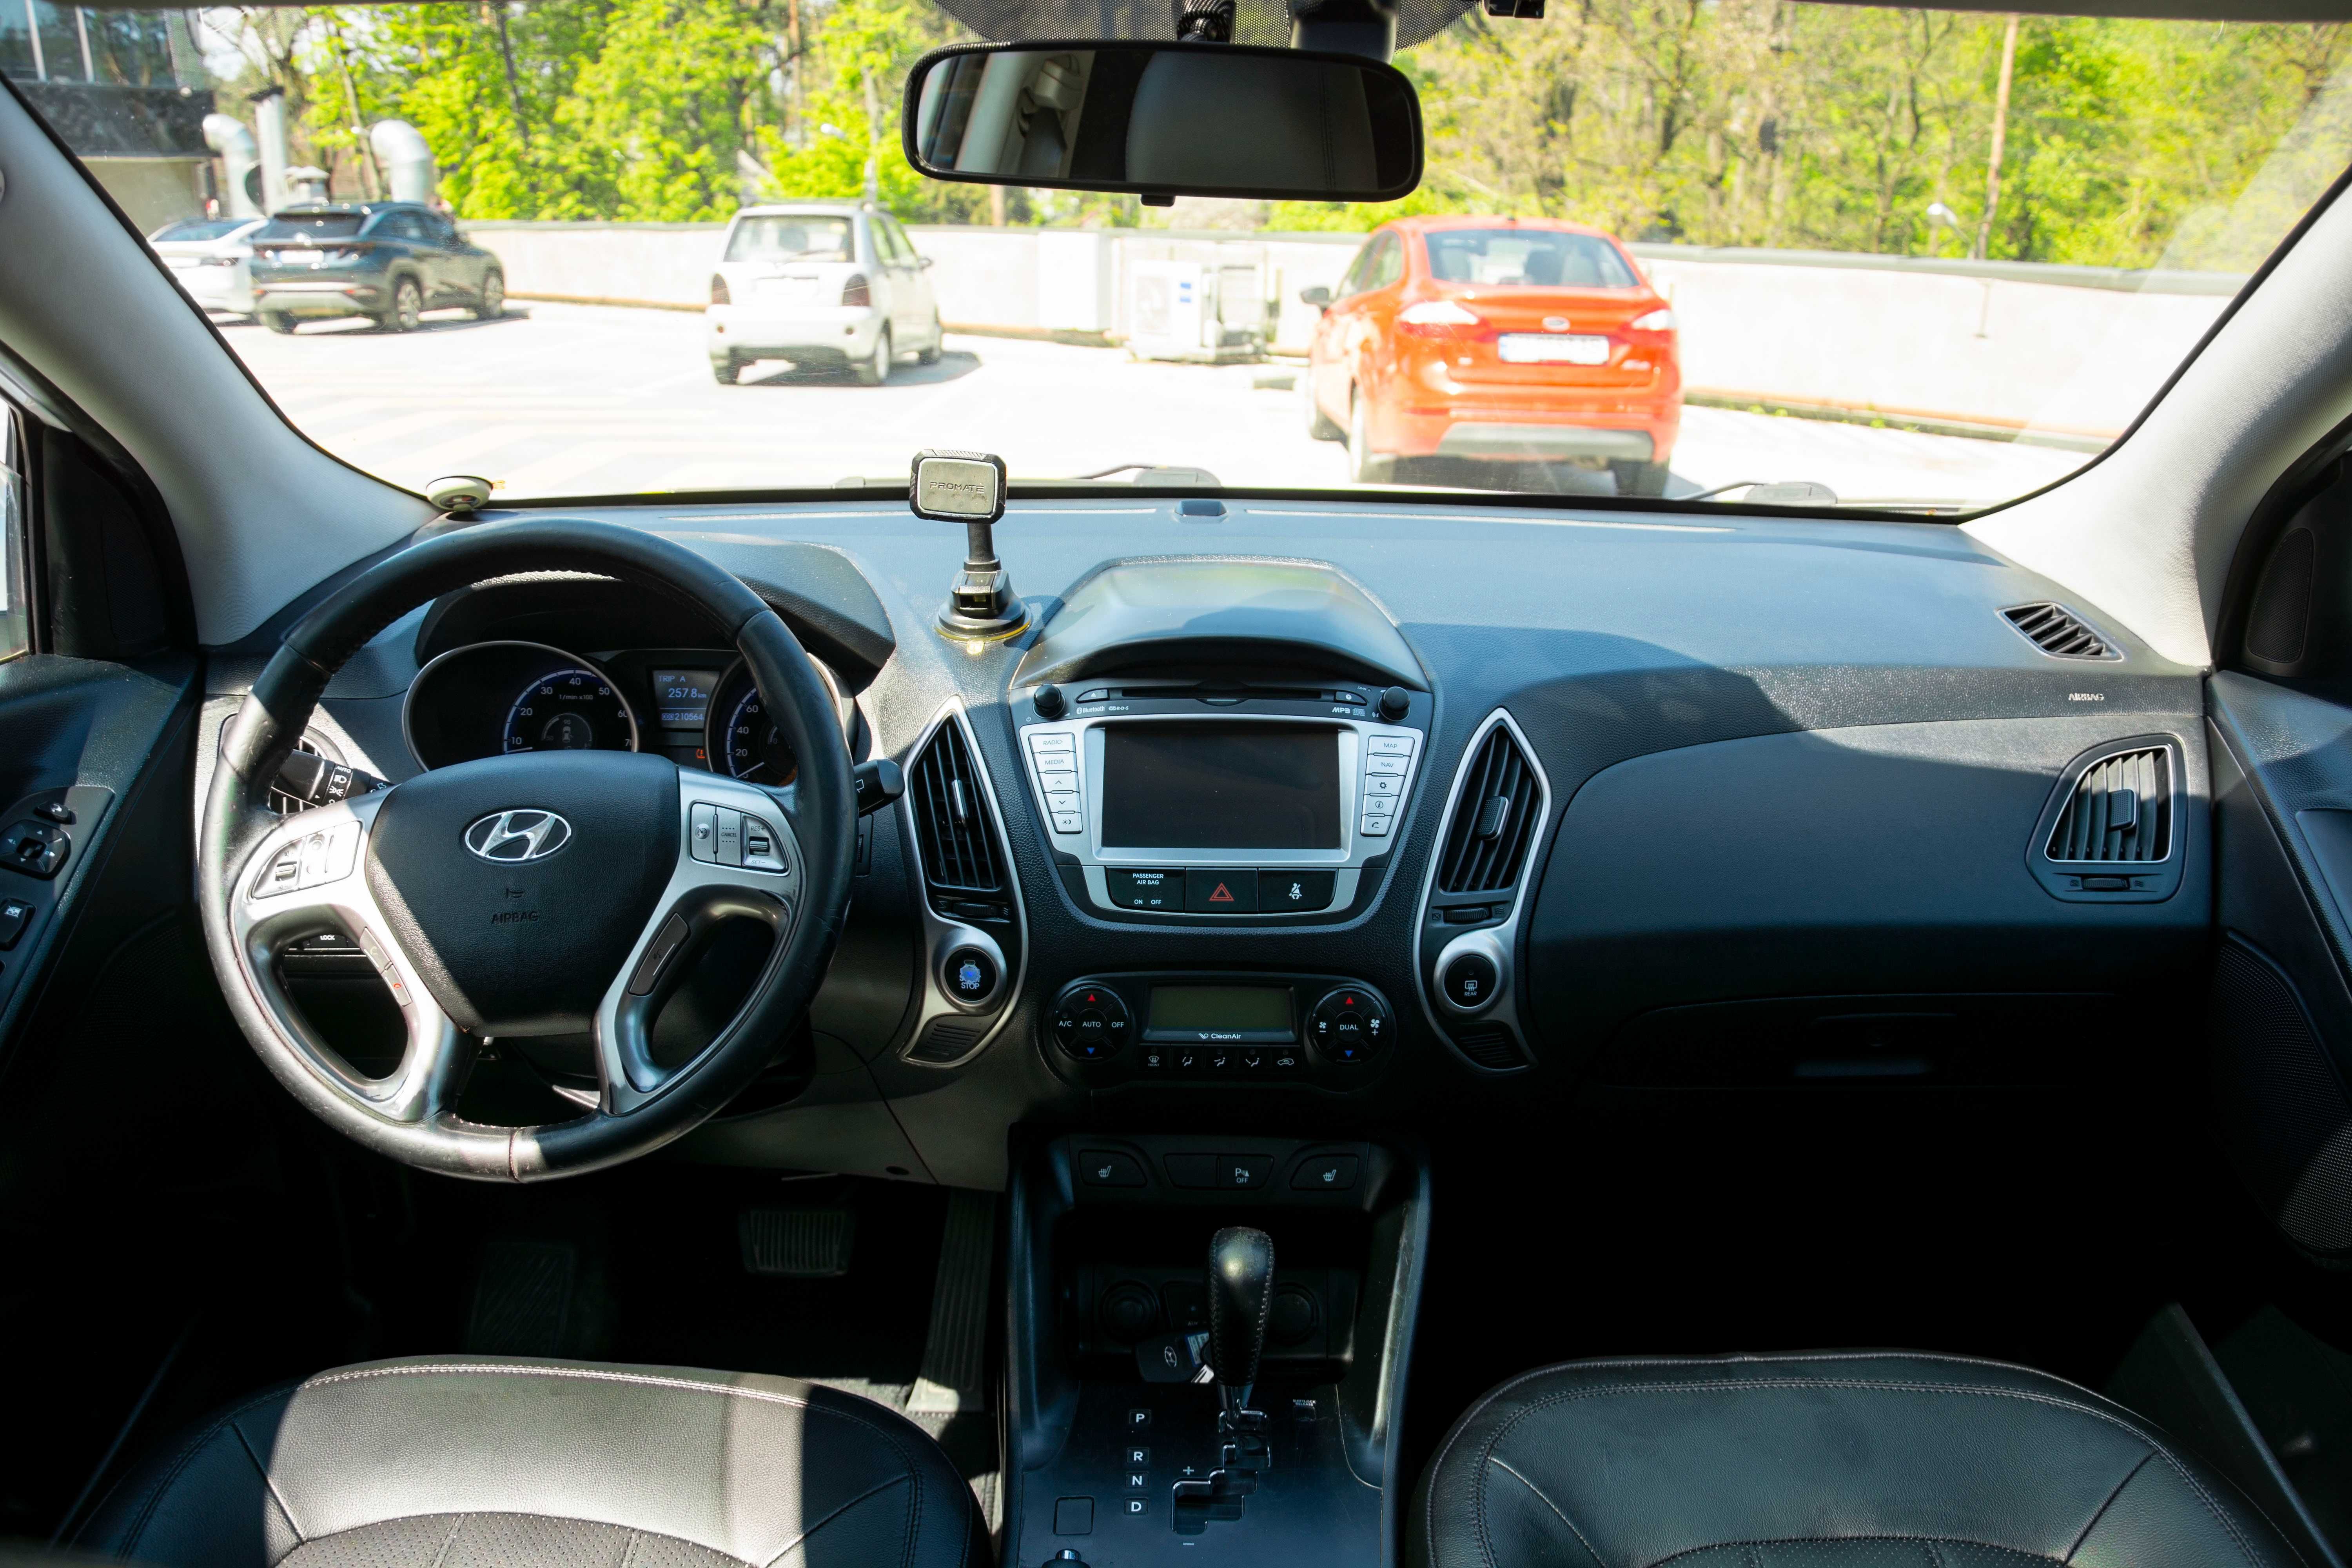 Hyundai ix35  2010 года в ТОП комплектации с панорамой.